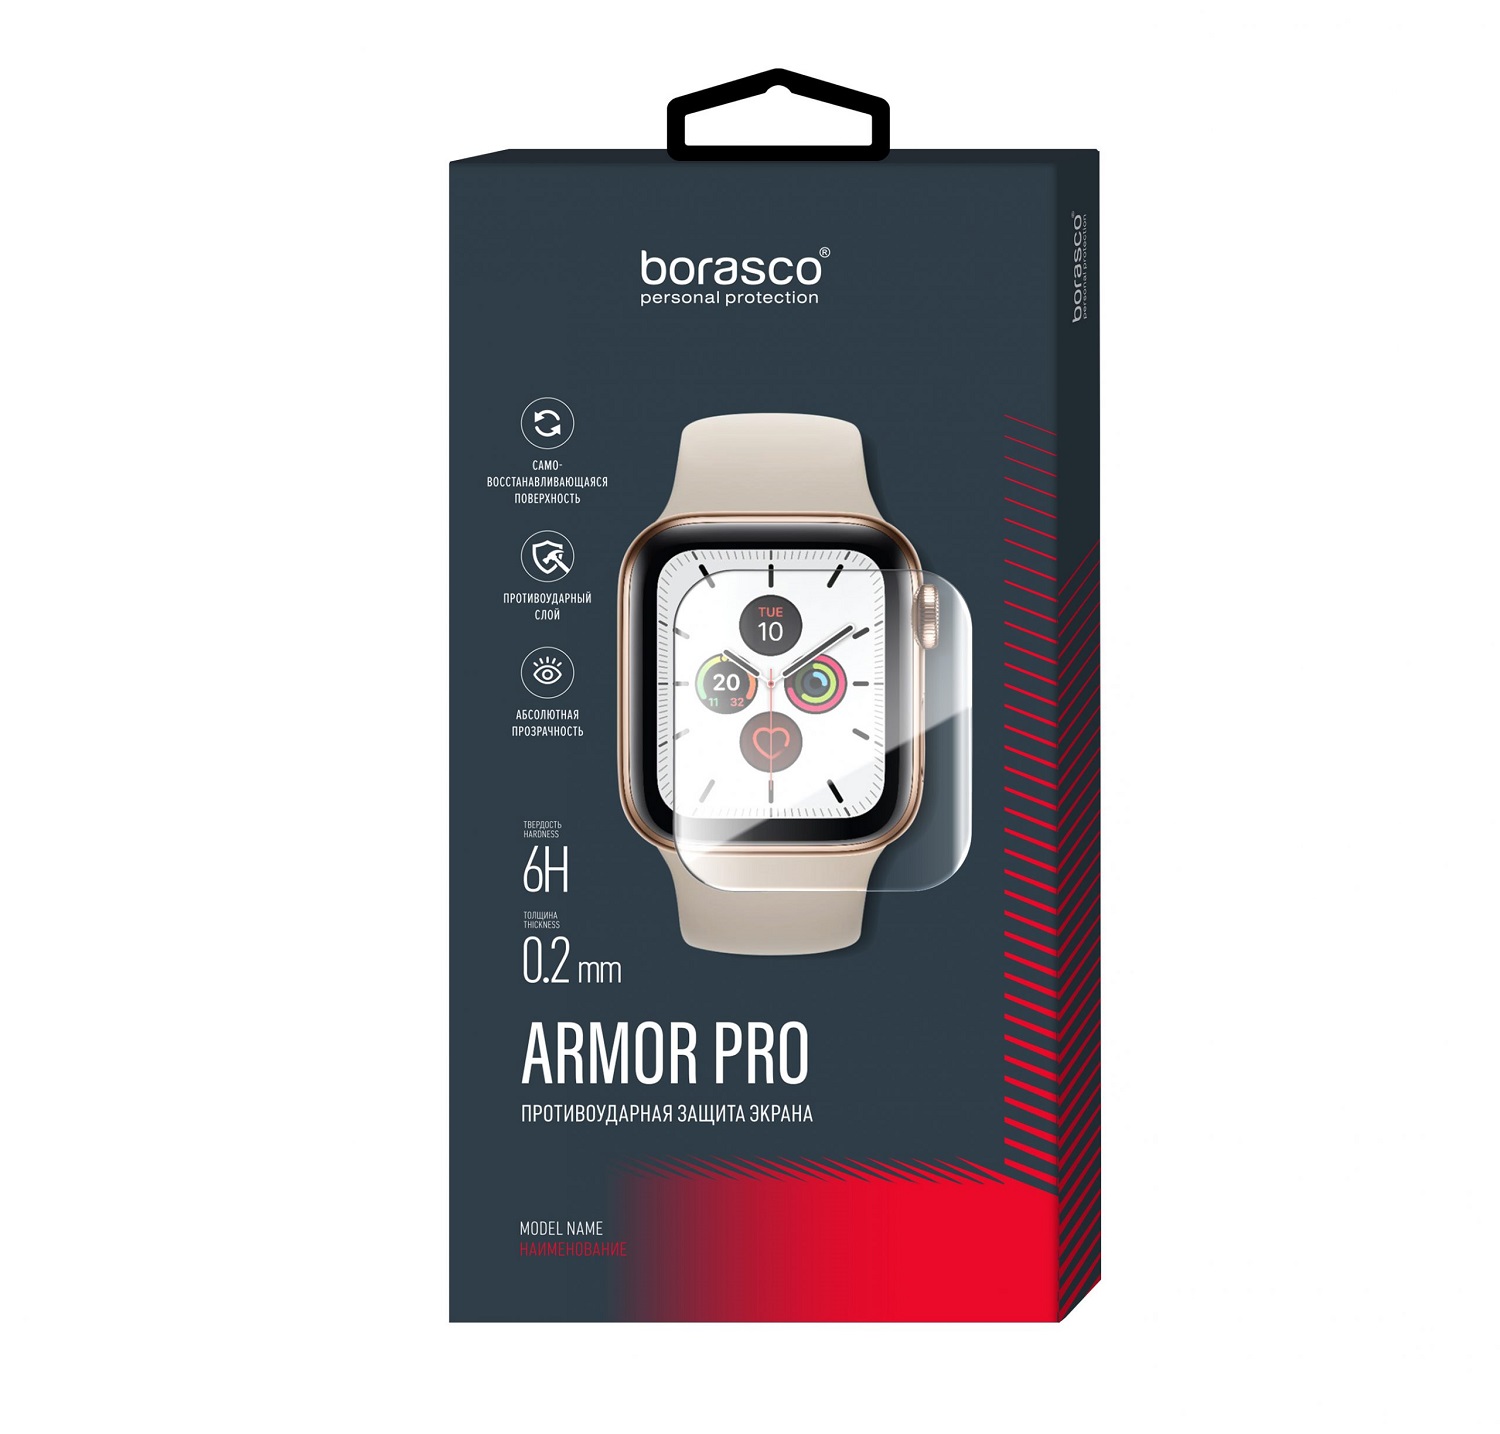 Защита экрана BoraSCO Armor Pro для Xiaomi Mi band 3 защита экрана borasco armor pro для honor band 6